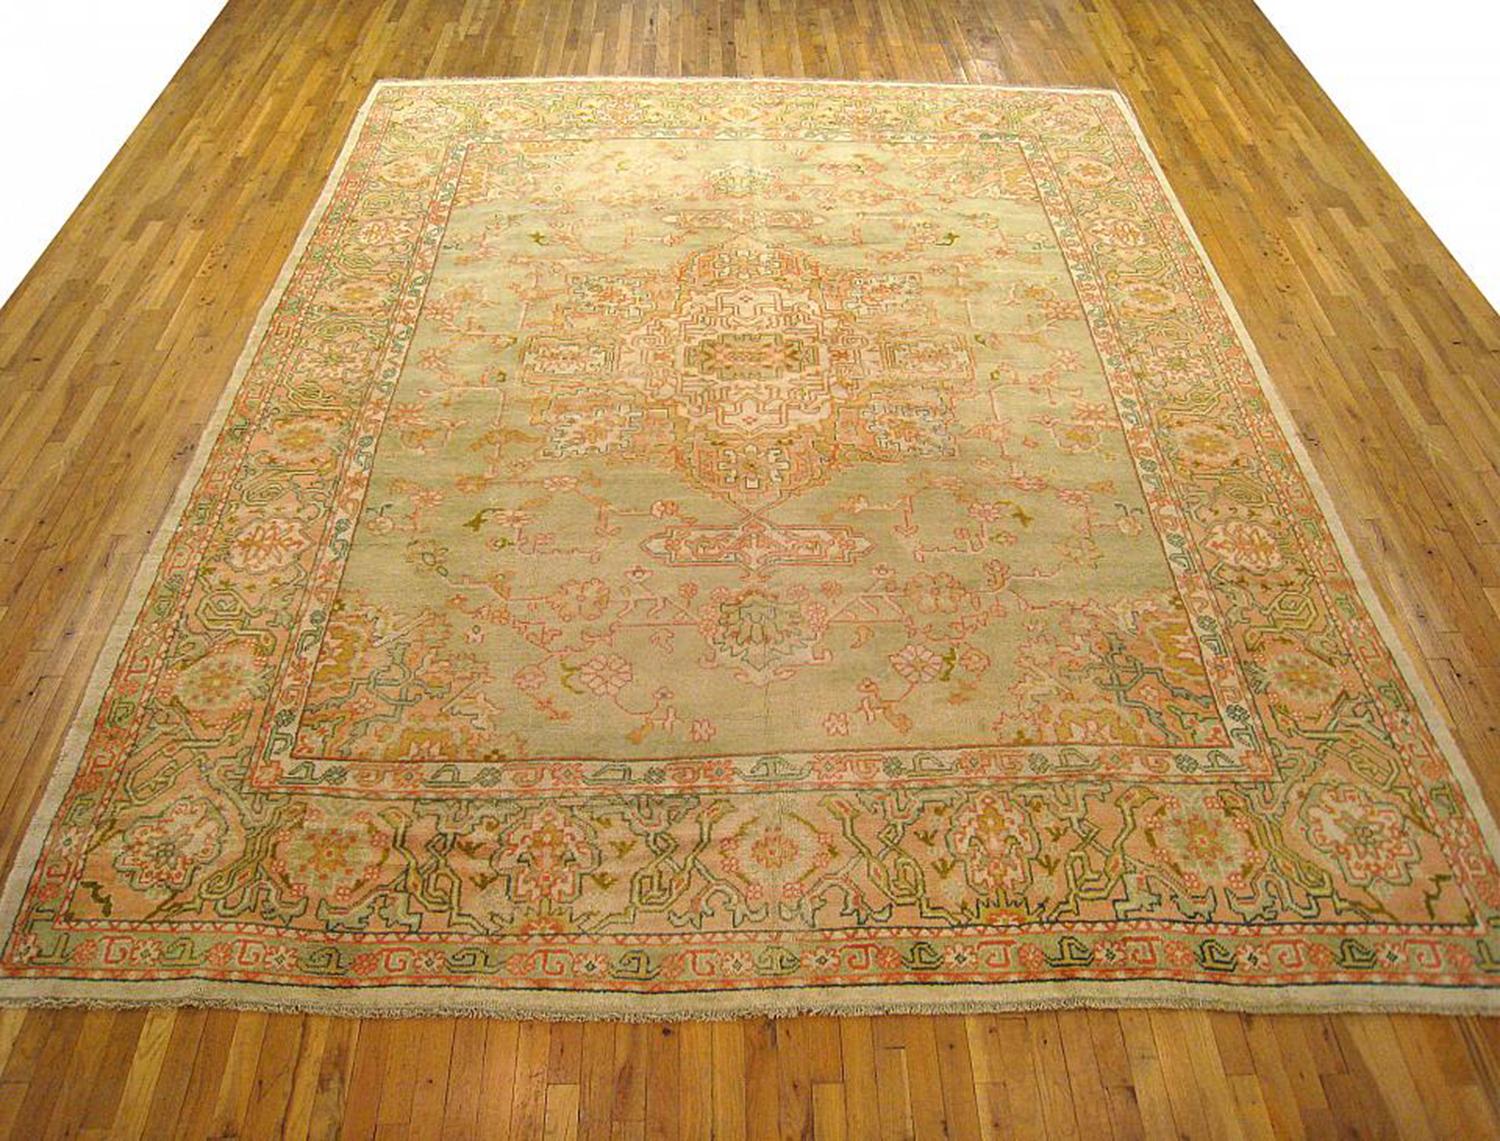 Ein antiker türkischer Oushak-Orientalteppich, Größe 13'2 x 10'3, um 1910. Dieser schöne dekorative Teppich zeigt ein diffuses Zentralmedaillon auf einem dezent getönten Mittelfeld, das von einer Bordüre mit stilisierten floralen Elementen umrahmt